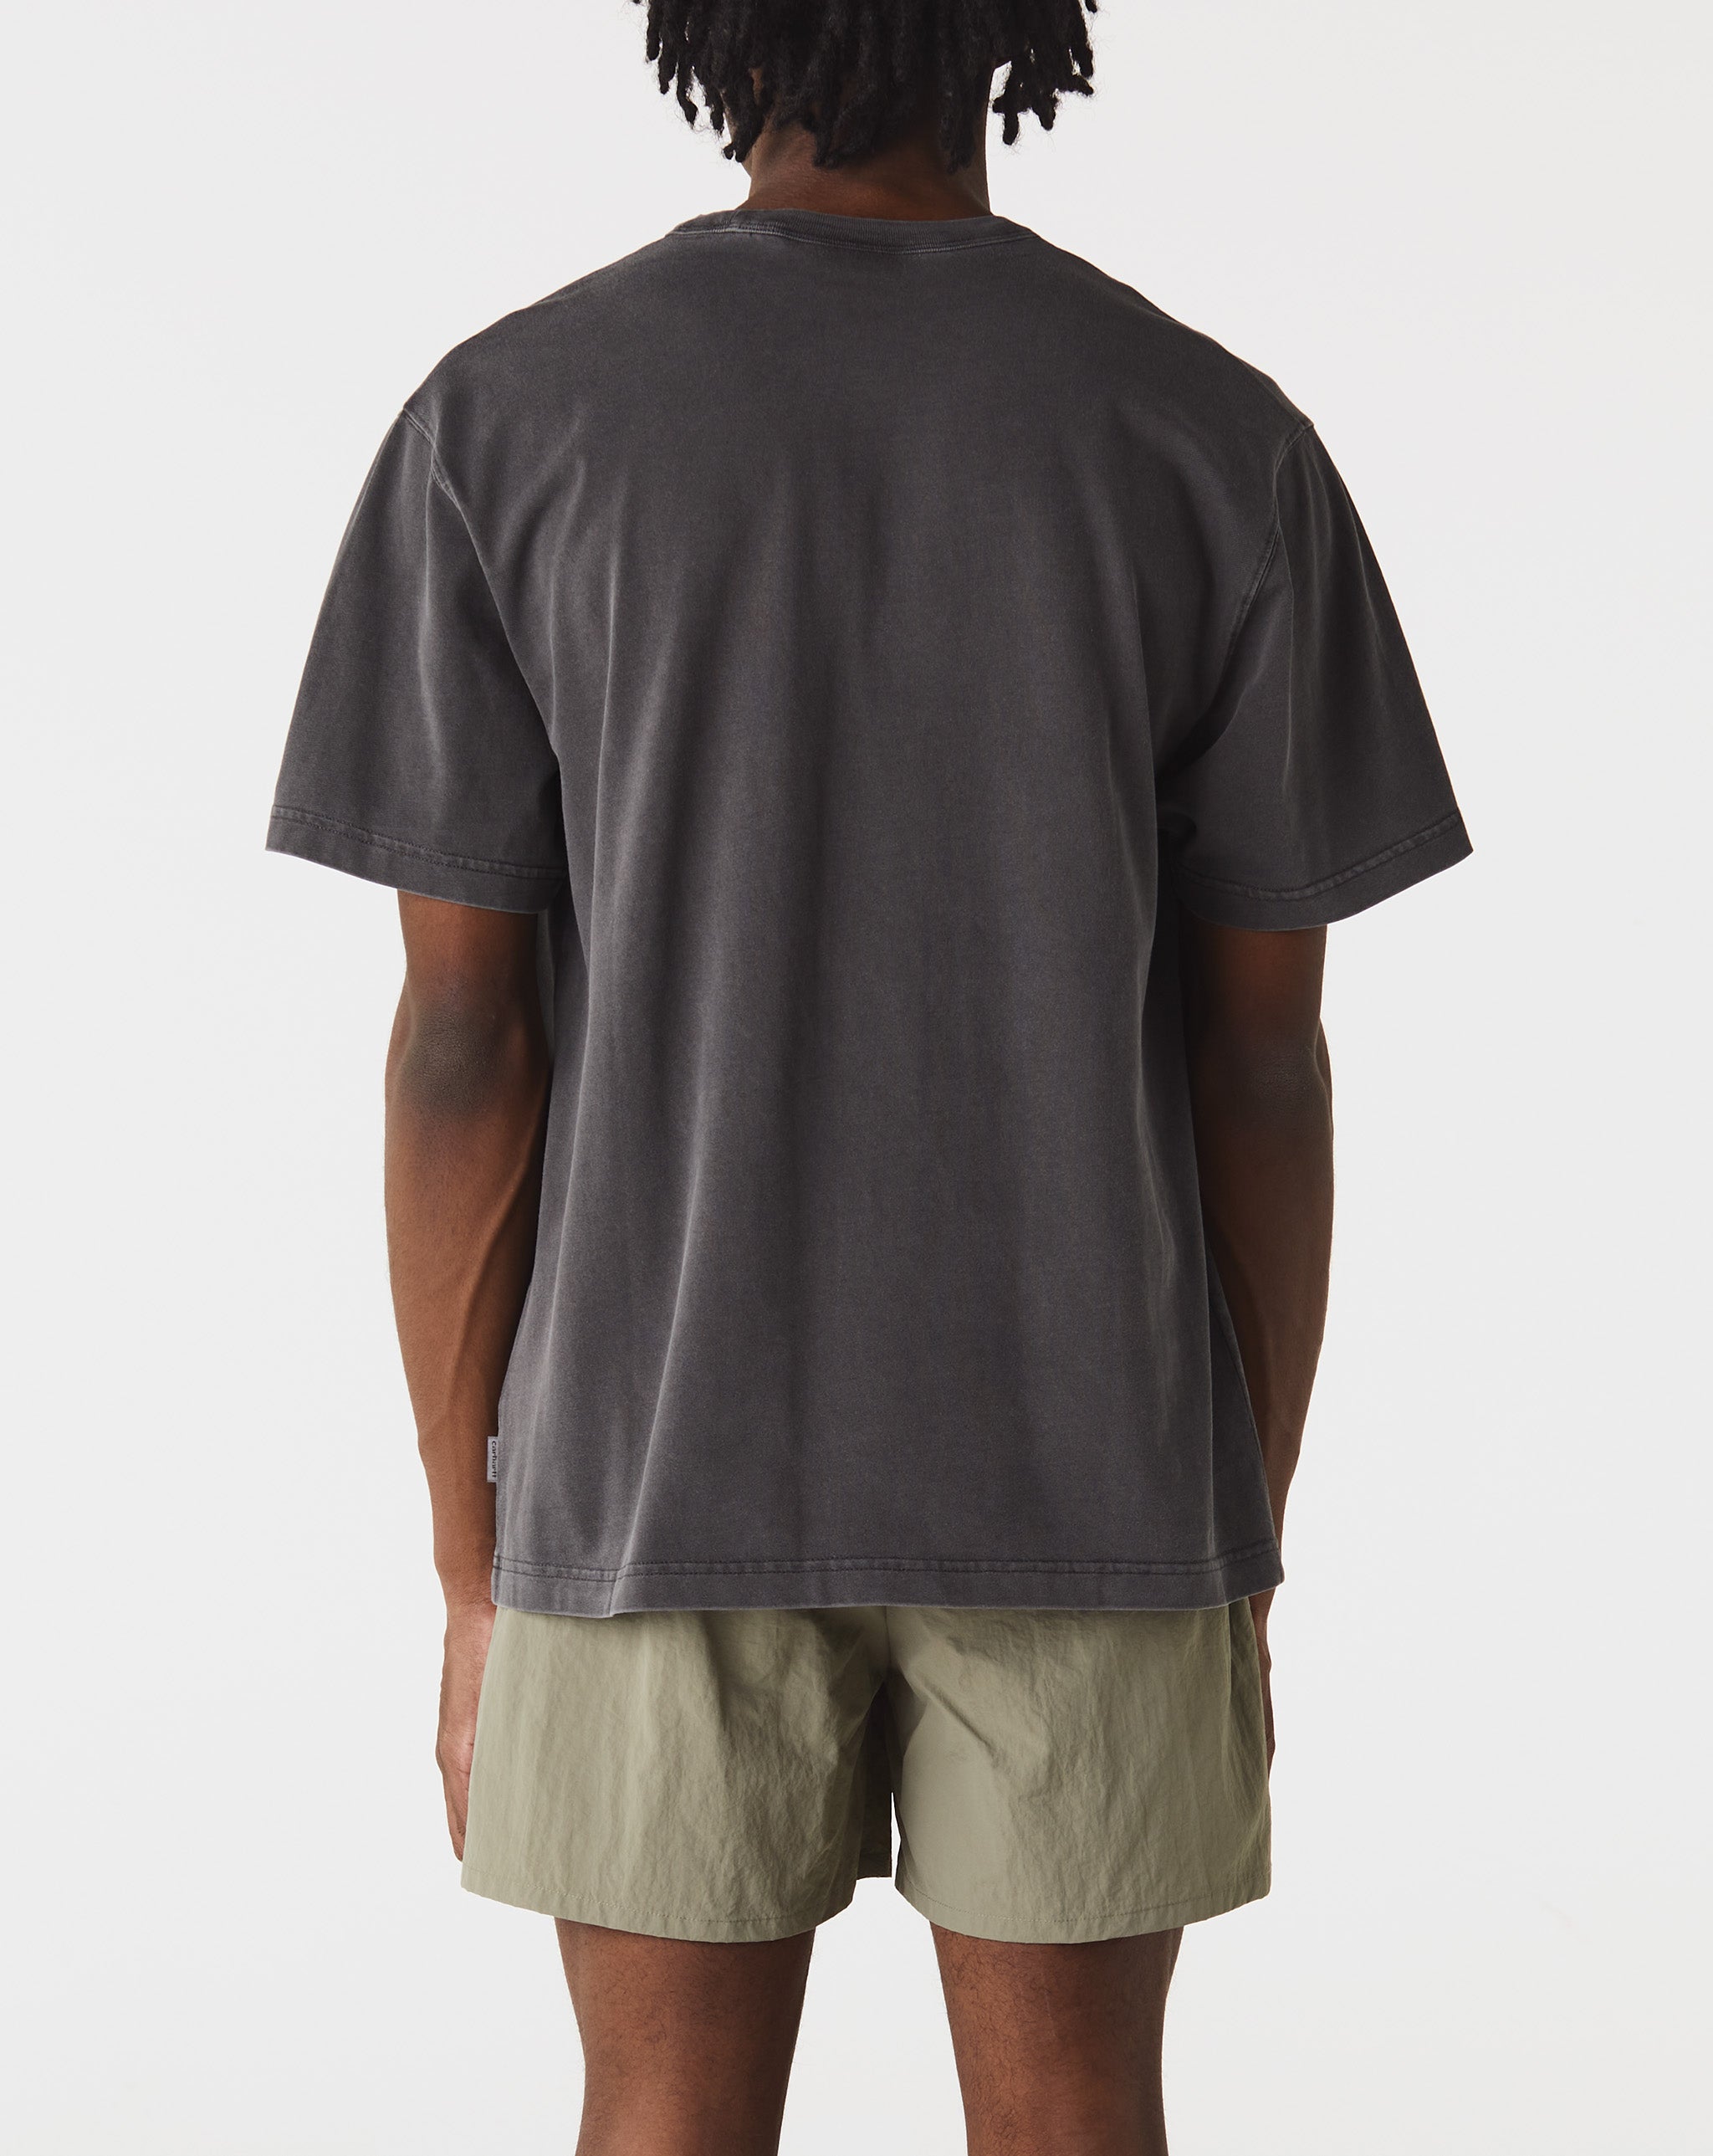 Carhartt WIP Taos T-Shirt  - Cheap Urlfreeze Jordan outlet